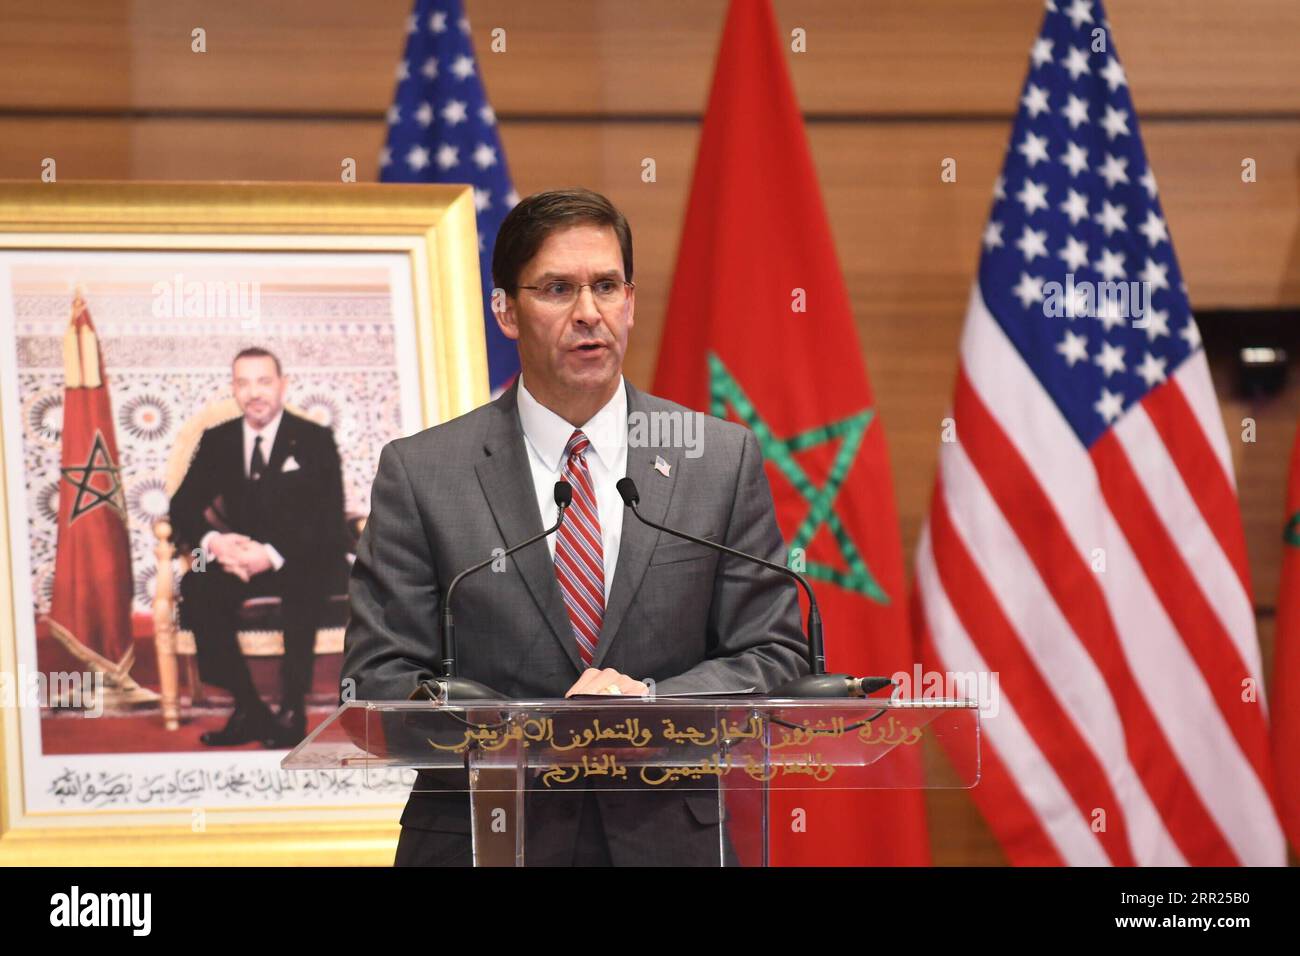 201002 -- RABAT, 2. Oktober 2020 -- US-Verteidigungsminister Mark Esper spricht auf einer Pressekonferenz mit dem marokkanischen Außenminister Nasser Bourita, nicht auf dem Bild in Rabat, Marokko, am 2. Oktober 2020. Marokko und die Vereinigten Staaten unterzeichneten am Freitag einen 10-jährigen Fahrplan für die Zusammenarbeit im Verteidigungsbereich, so diplomatische Quellen. Foto: /Xinhua MOROCCO-RABAT-FM-U.S.-DEFENSE SECRETARY-DEFENSE COOPERATION Chadi PUBLICATIONxNOTxINxCHN Stockfoto